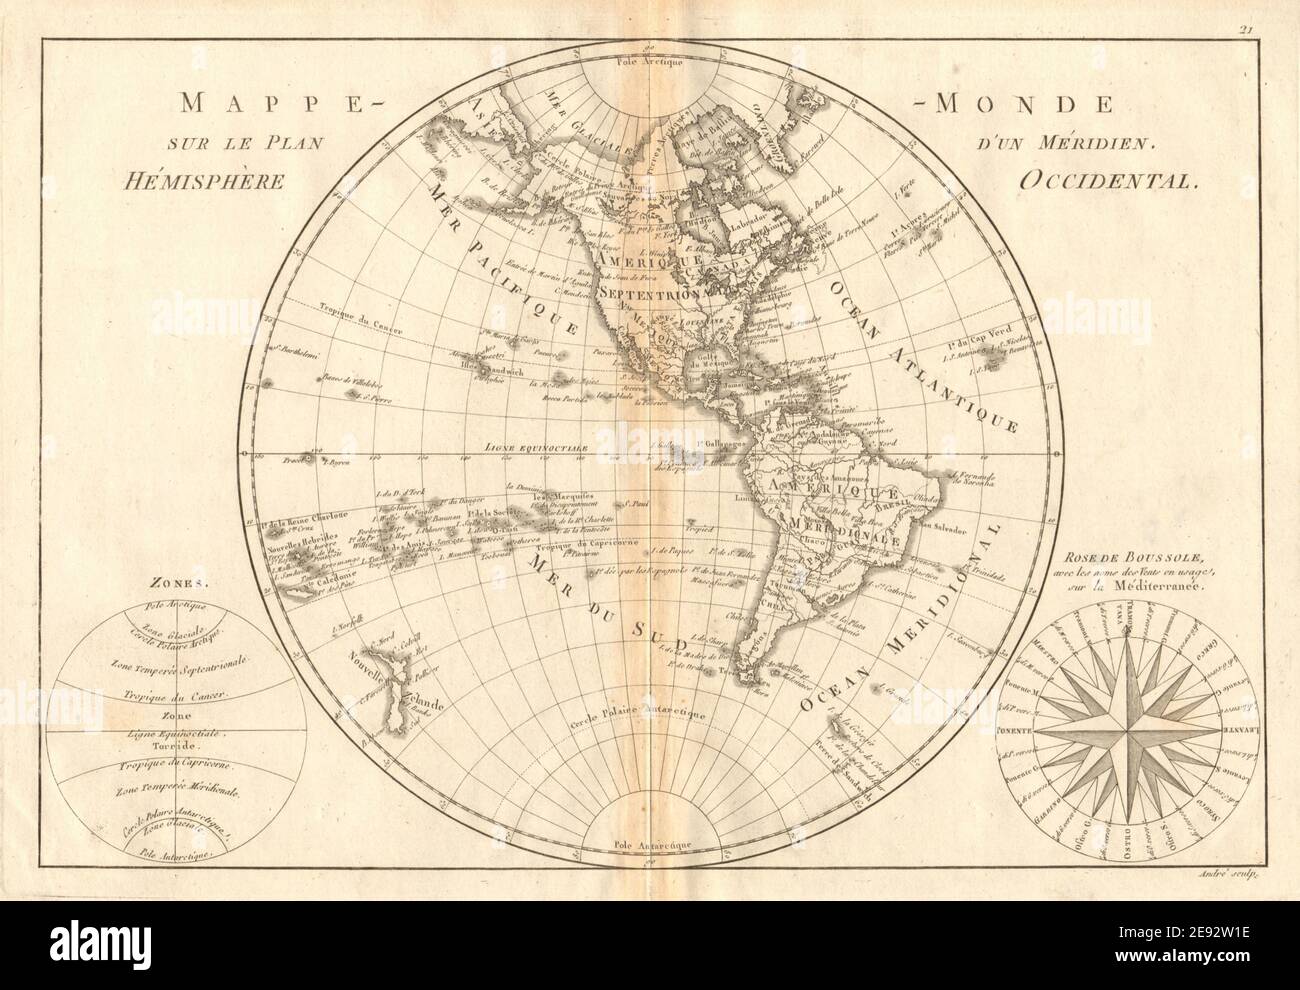 Acipe-monde sur le plan d’un Méridien, emisfero occidentale. BONNE 1787 Foto Stock